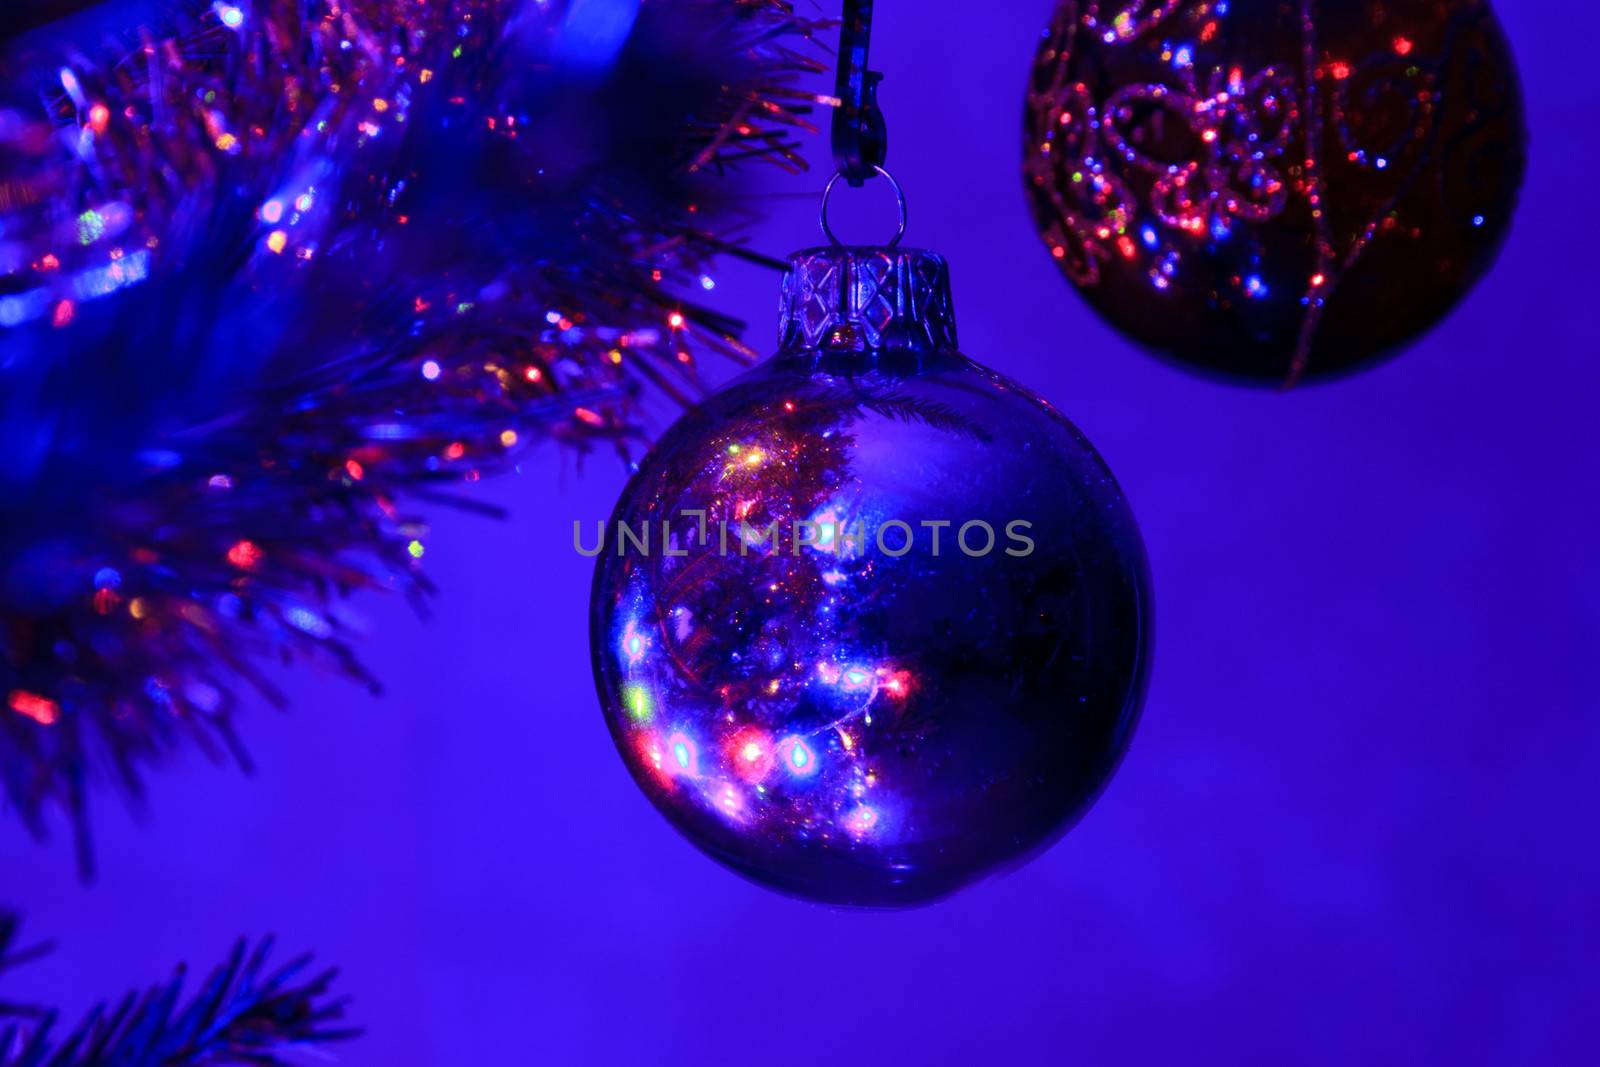 the ball pendant on holiday Christmas tree